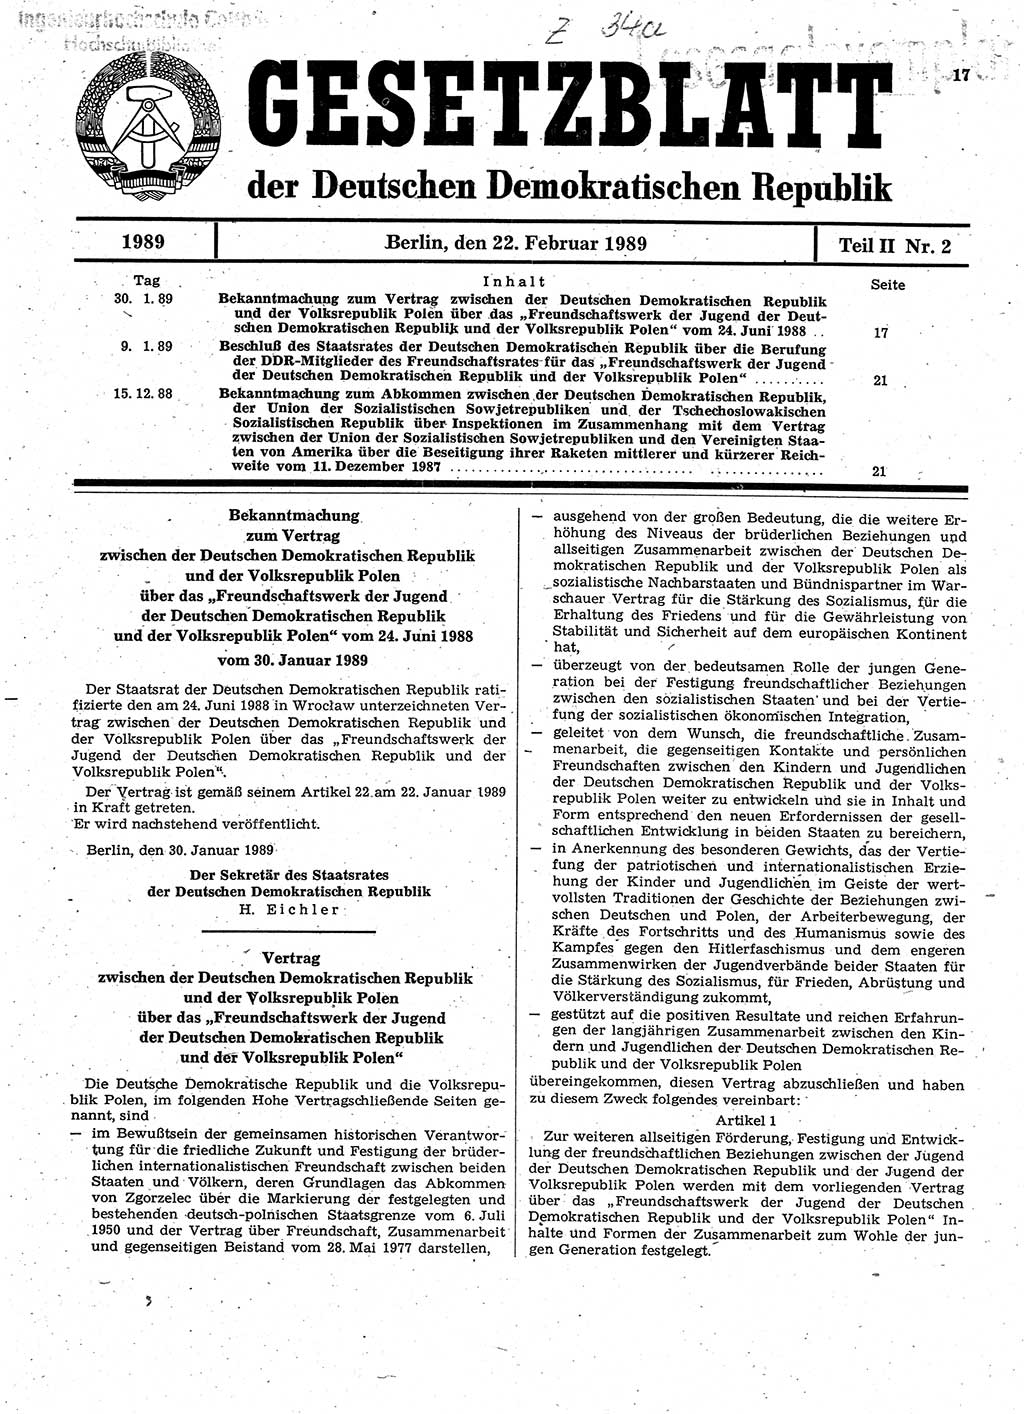 Gesetzblatt (GBl.) der Deutschen Demokratischen Republik (DDR) Teil ⅠⅠ 1989, Seite 17 (GBl. DDR ⅠⅠ 1989, S. 17)